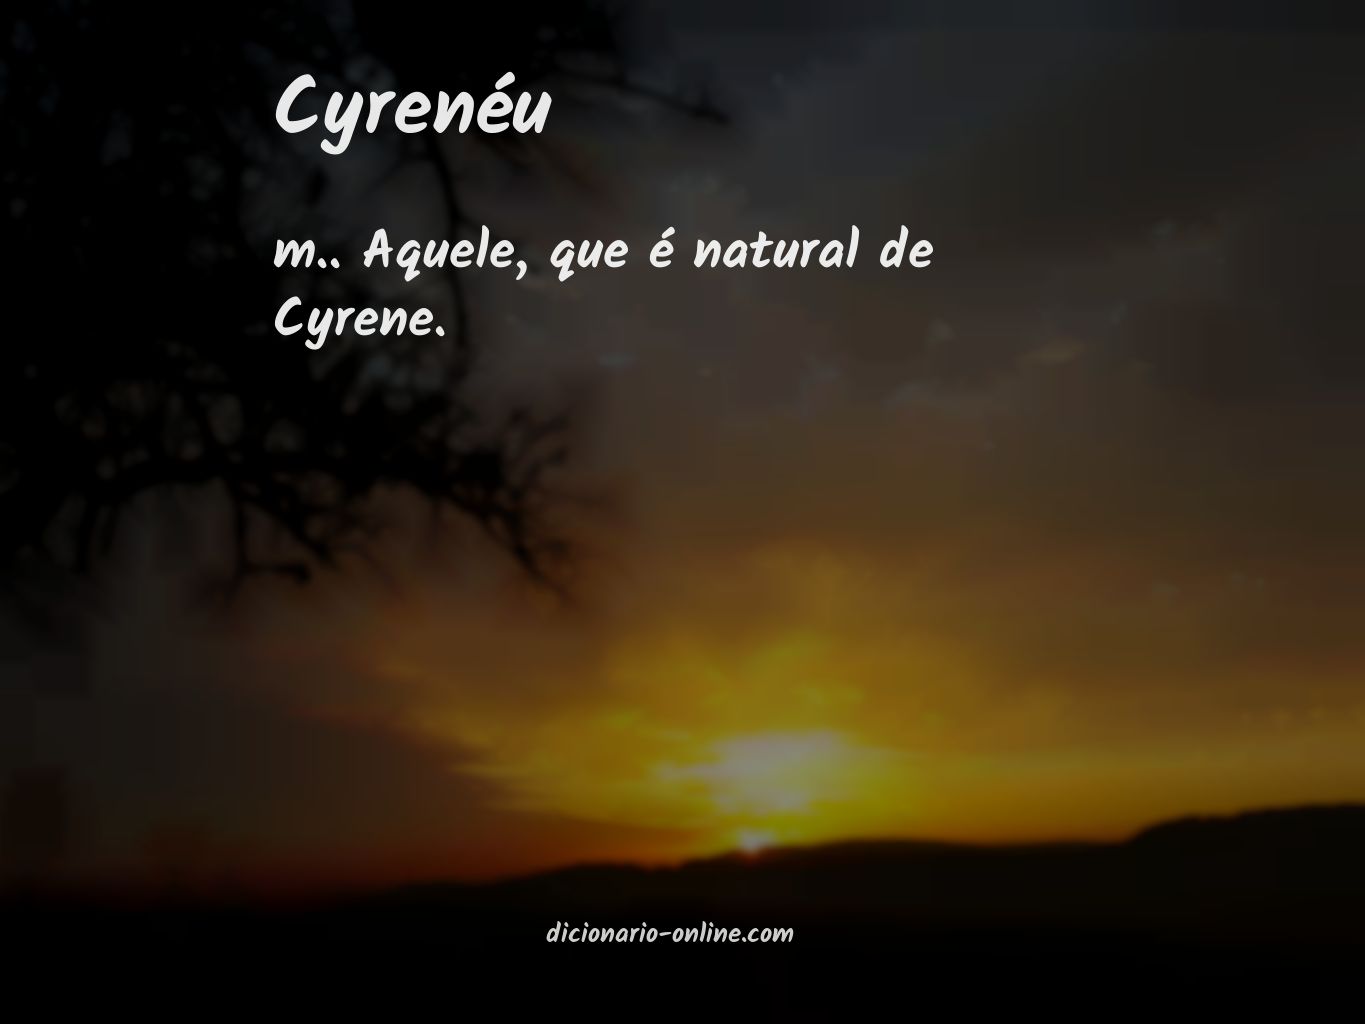 Significado de cyrenéu